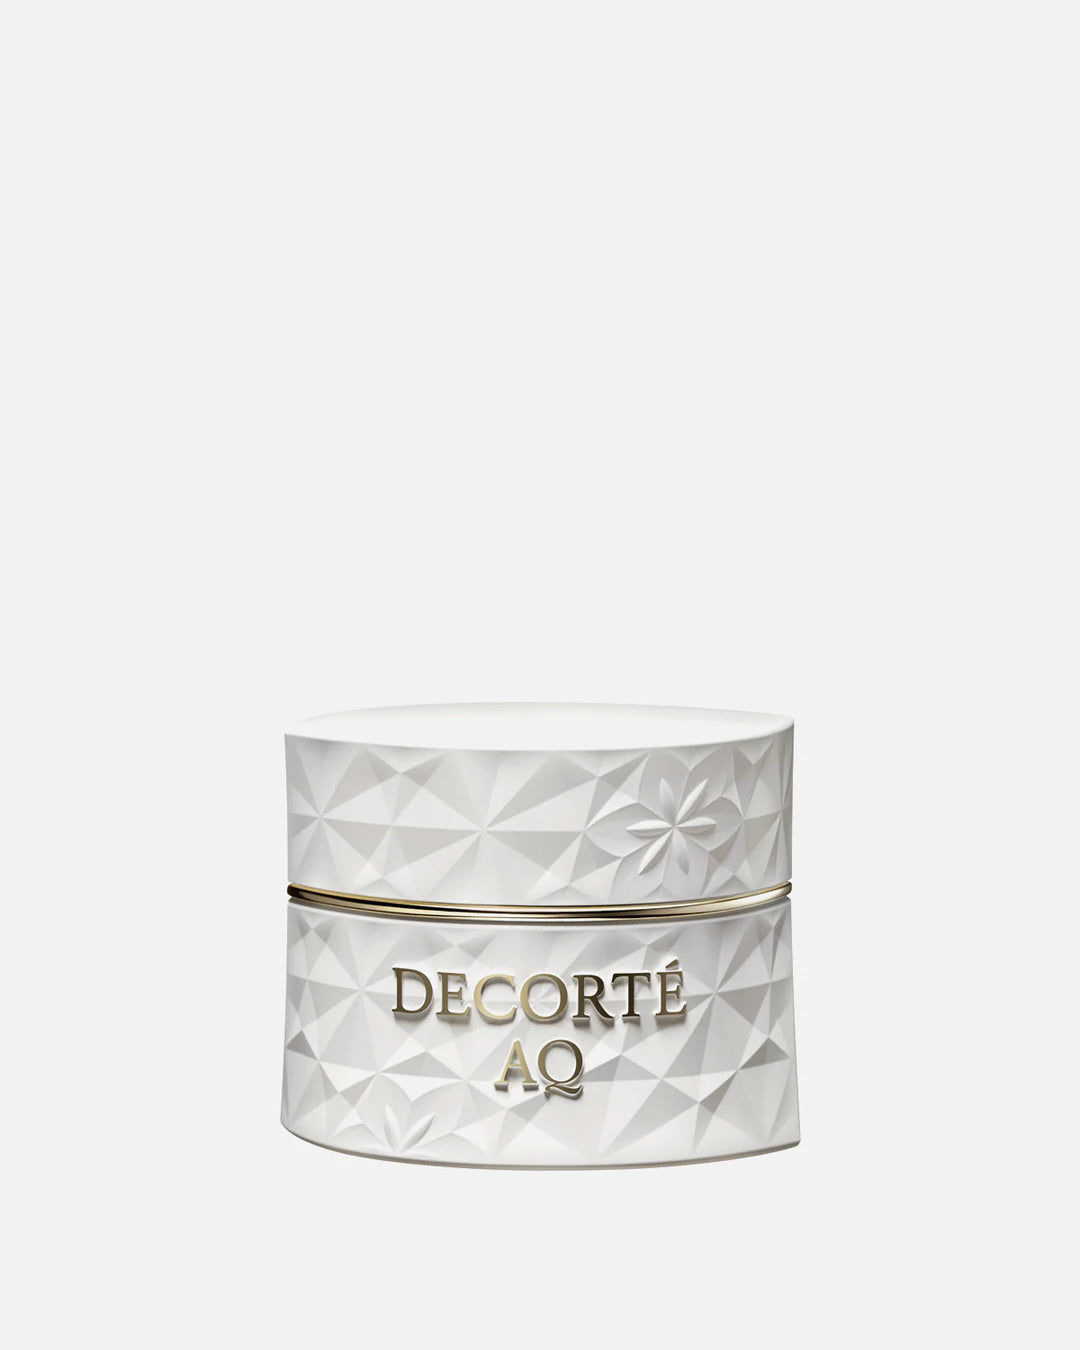 DECORTE AQ Cream